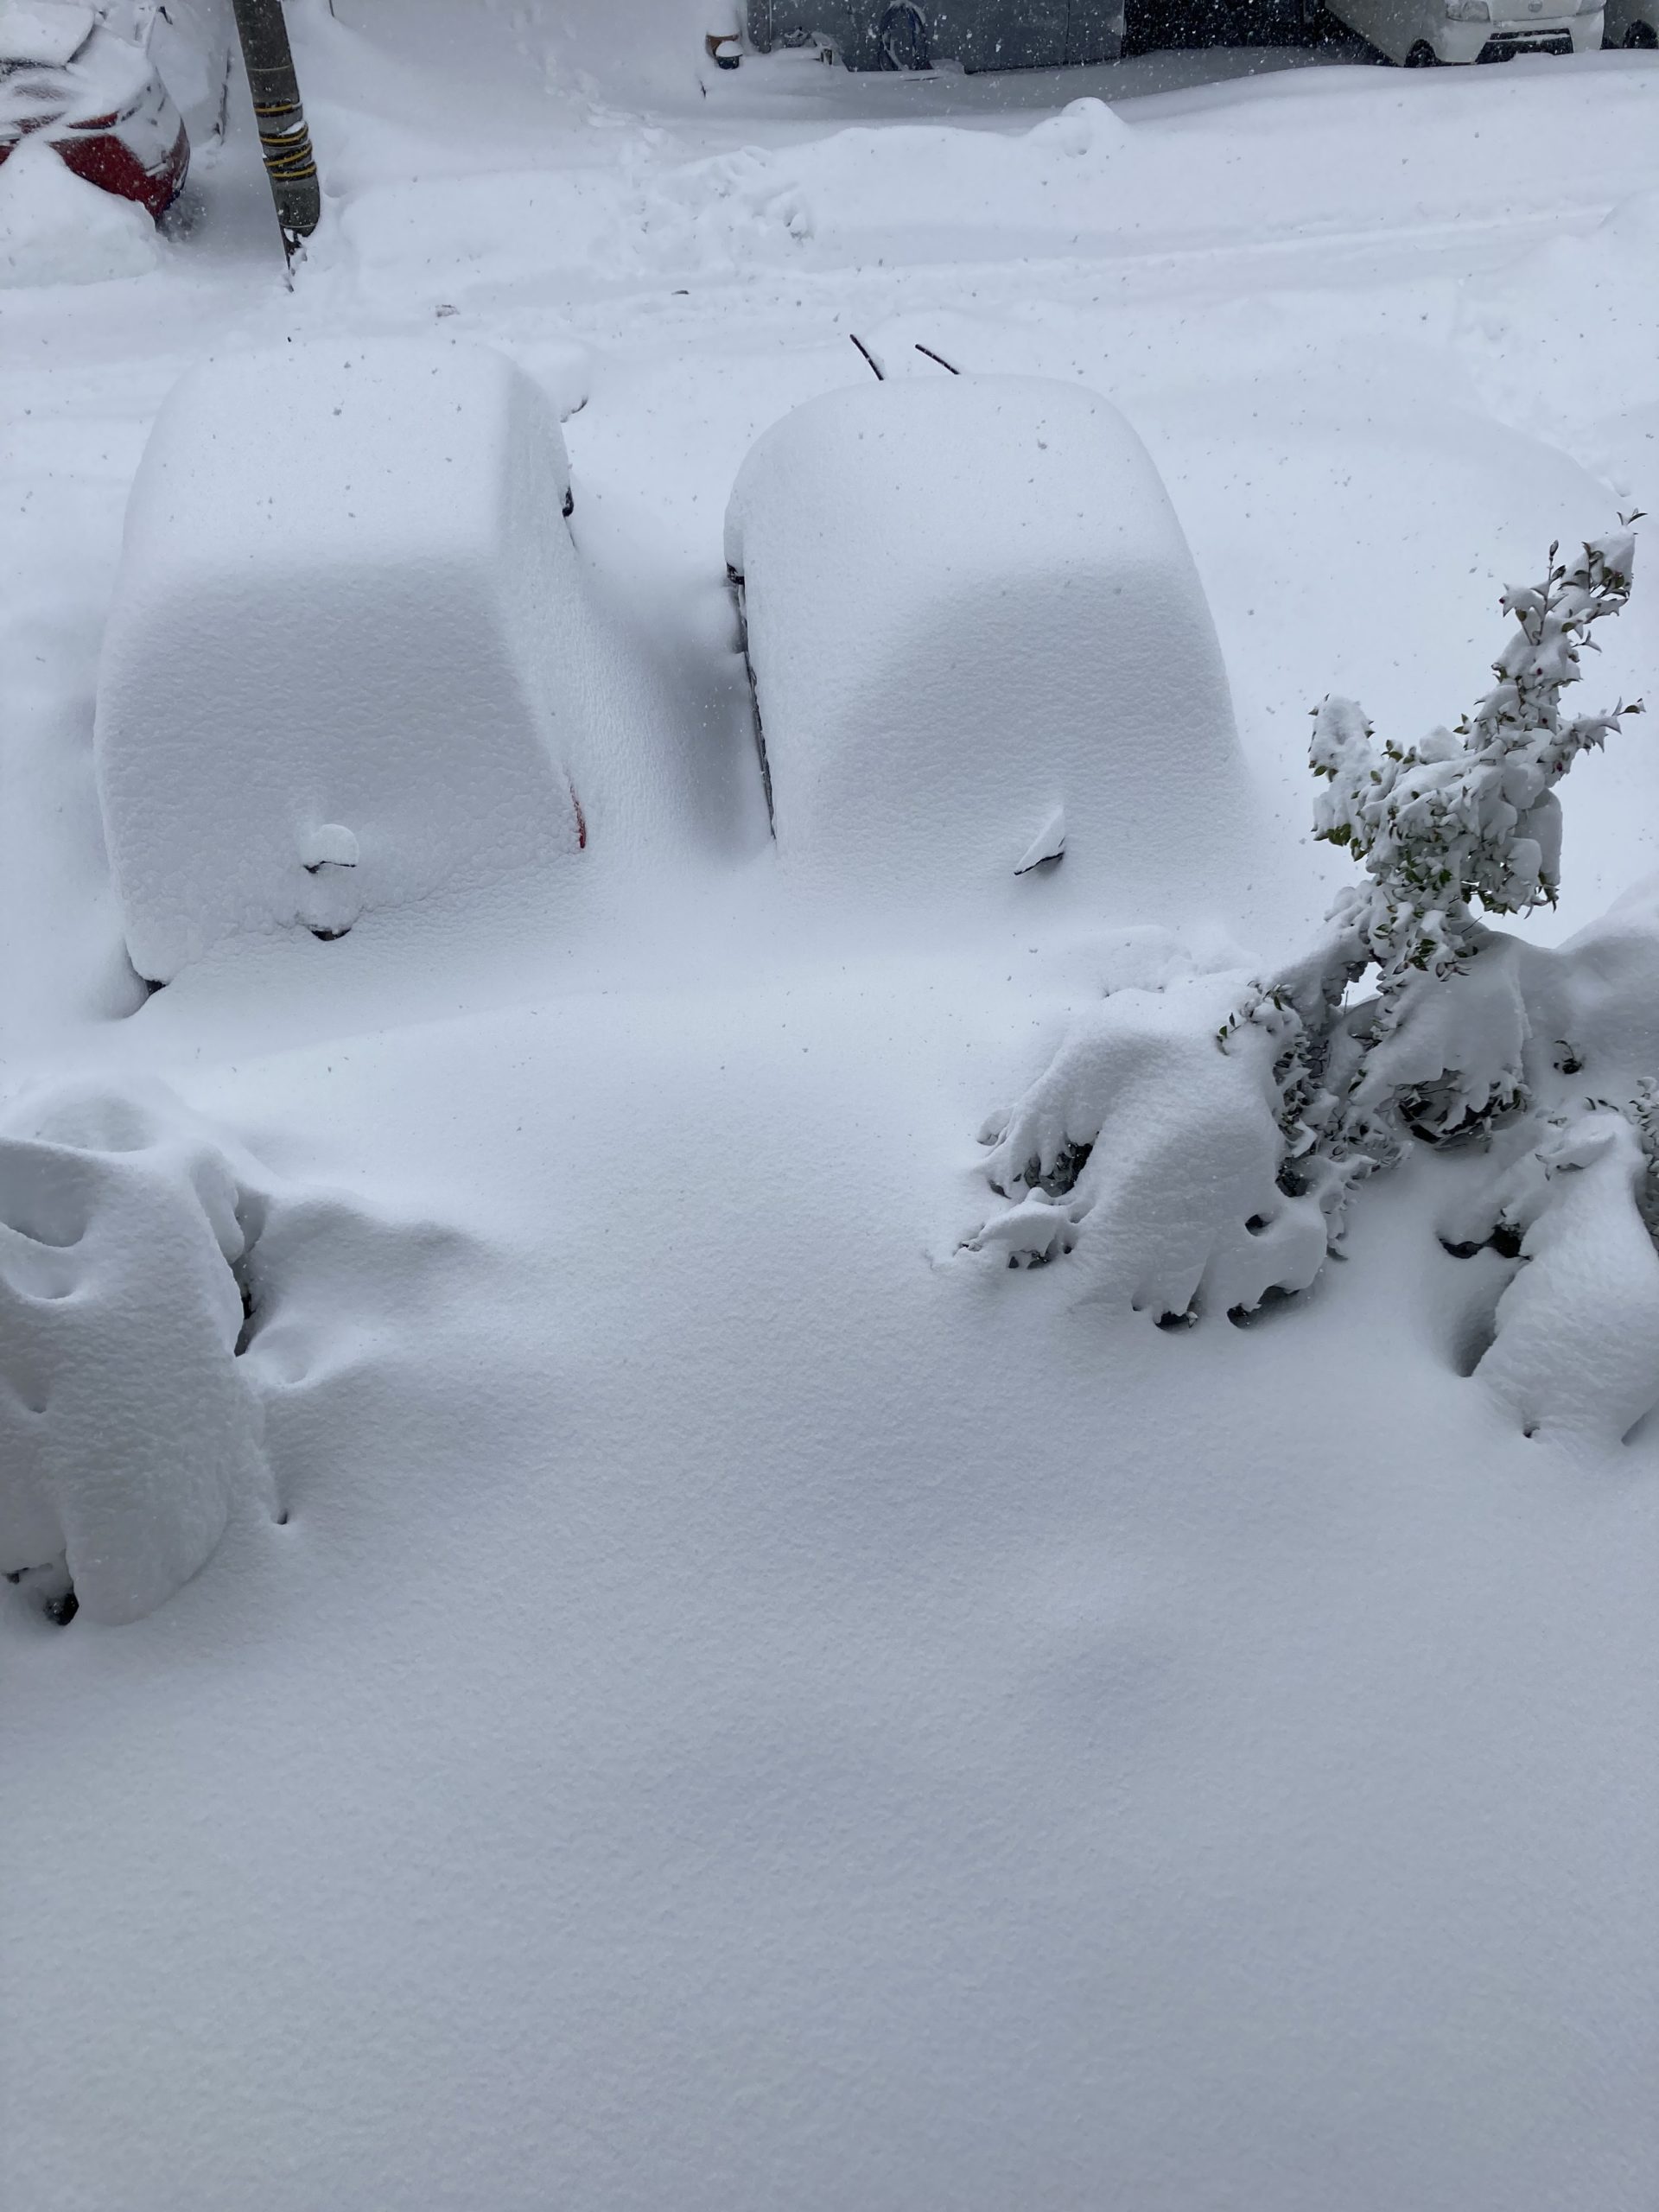 福井大雪 21年 3年前の豪雪と同程度の降雪量で車立往生やスーパー品薄